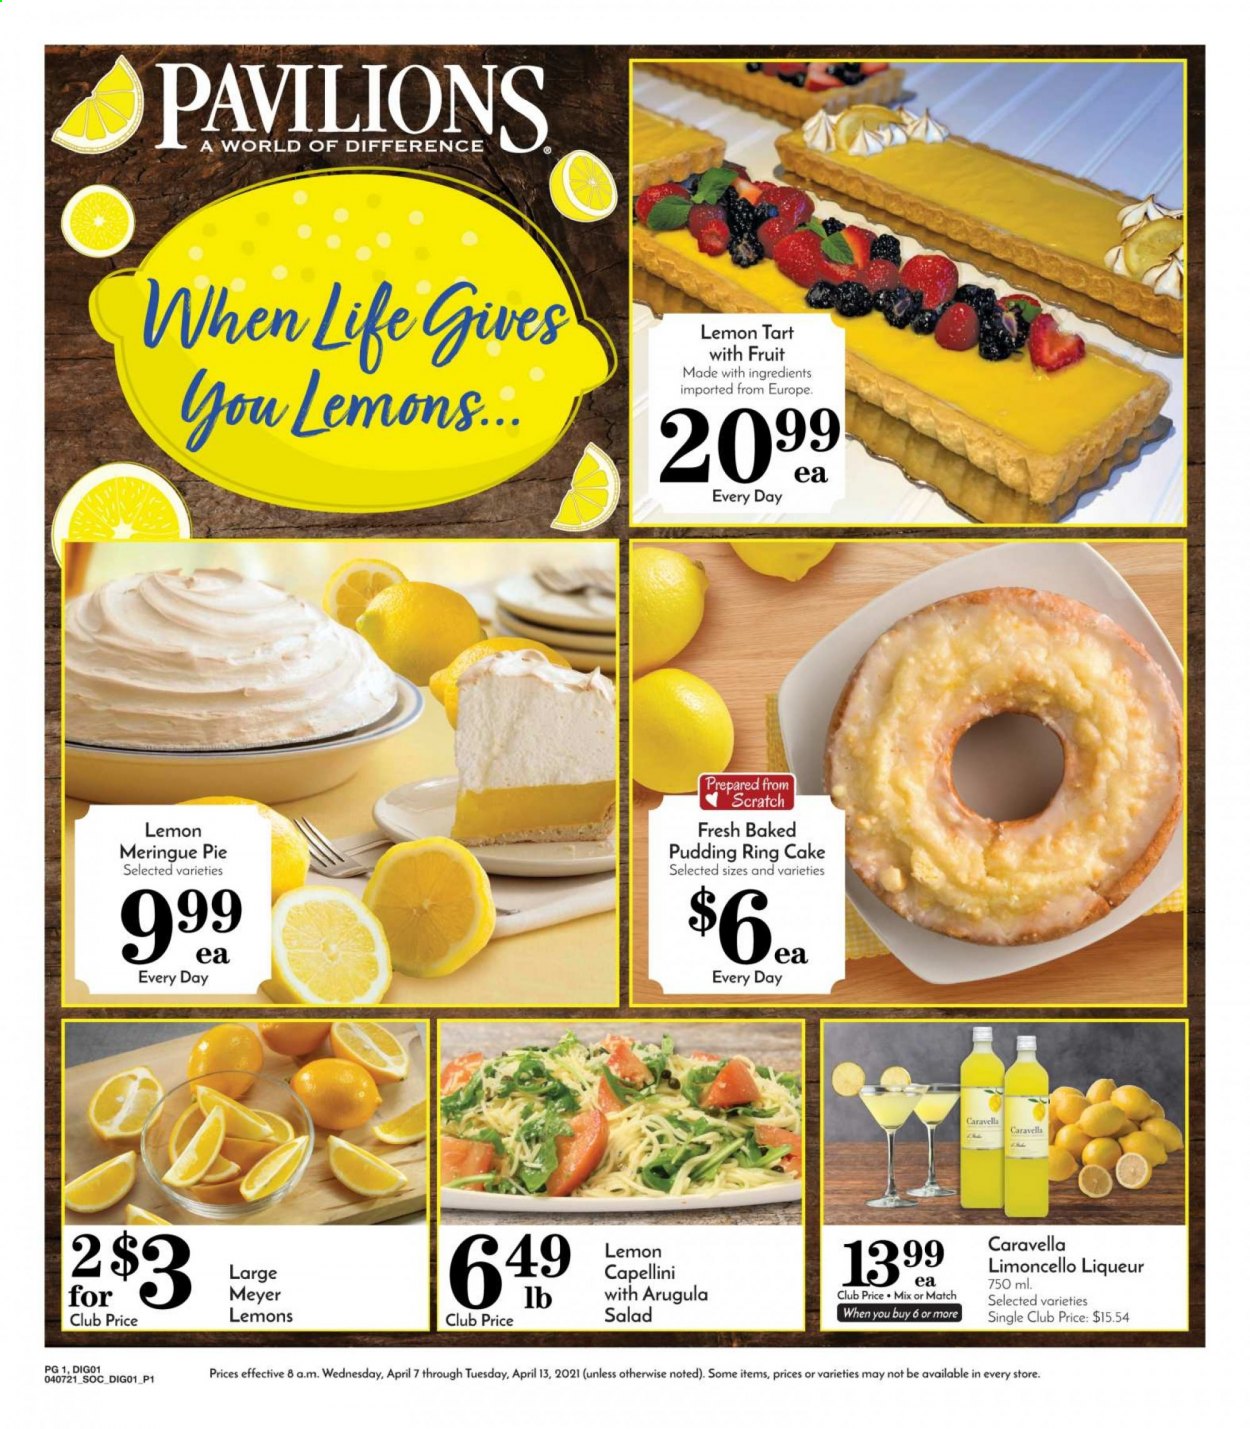 thumbnail - Pavilions Flyer - 04/07/2021 - 04/13/2021 - Sales products - cake, pie, tart, pudding ring, salad, Limoncello, liqueur, lemons. Page 1.